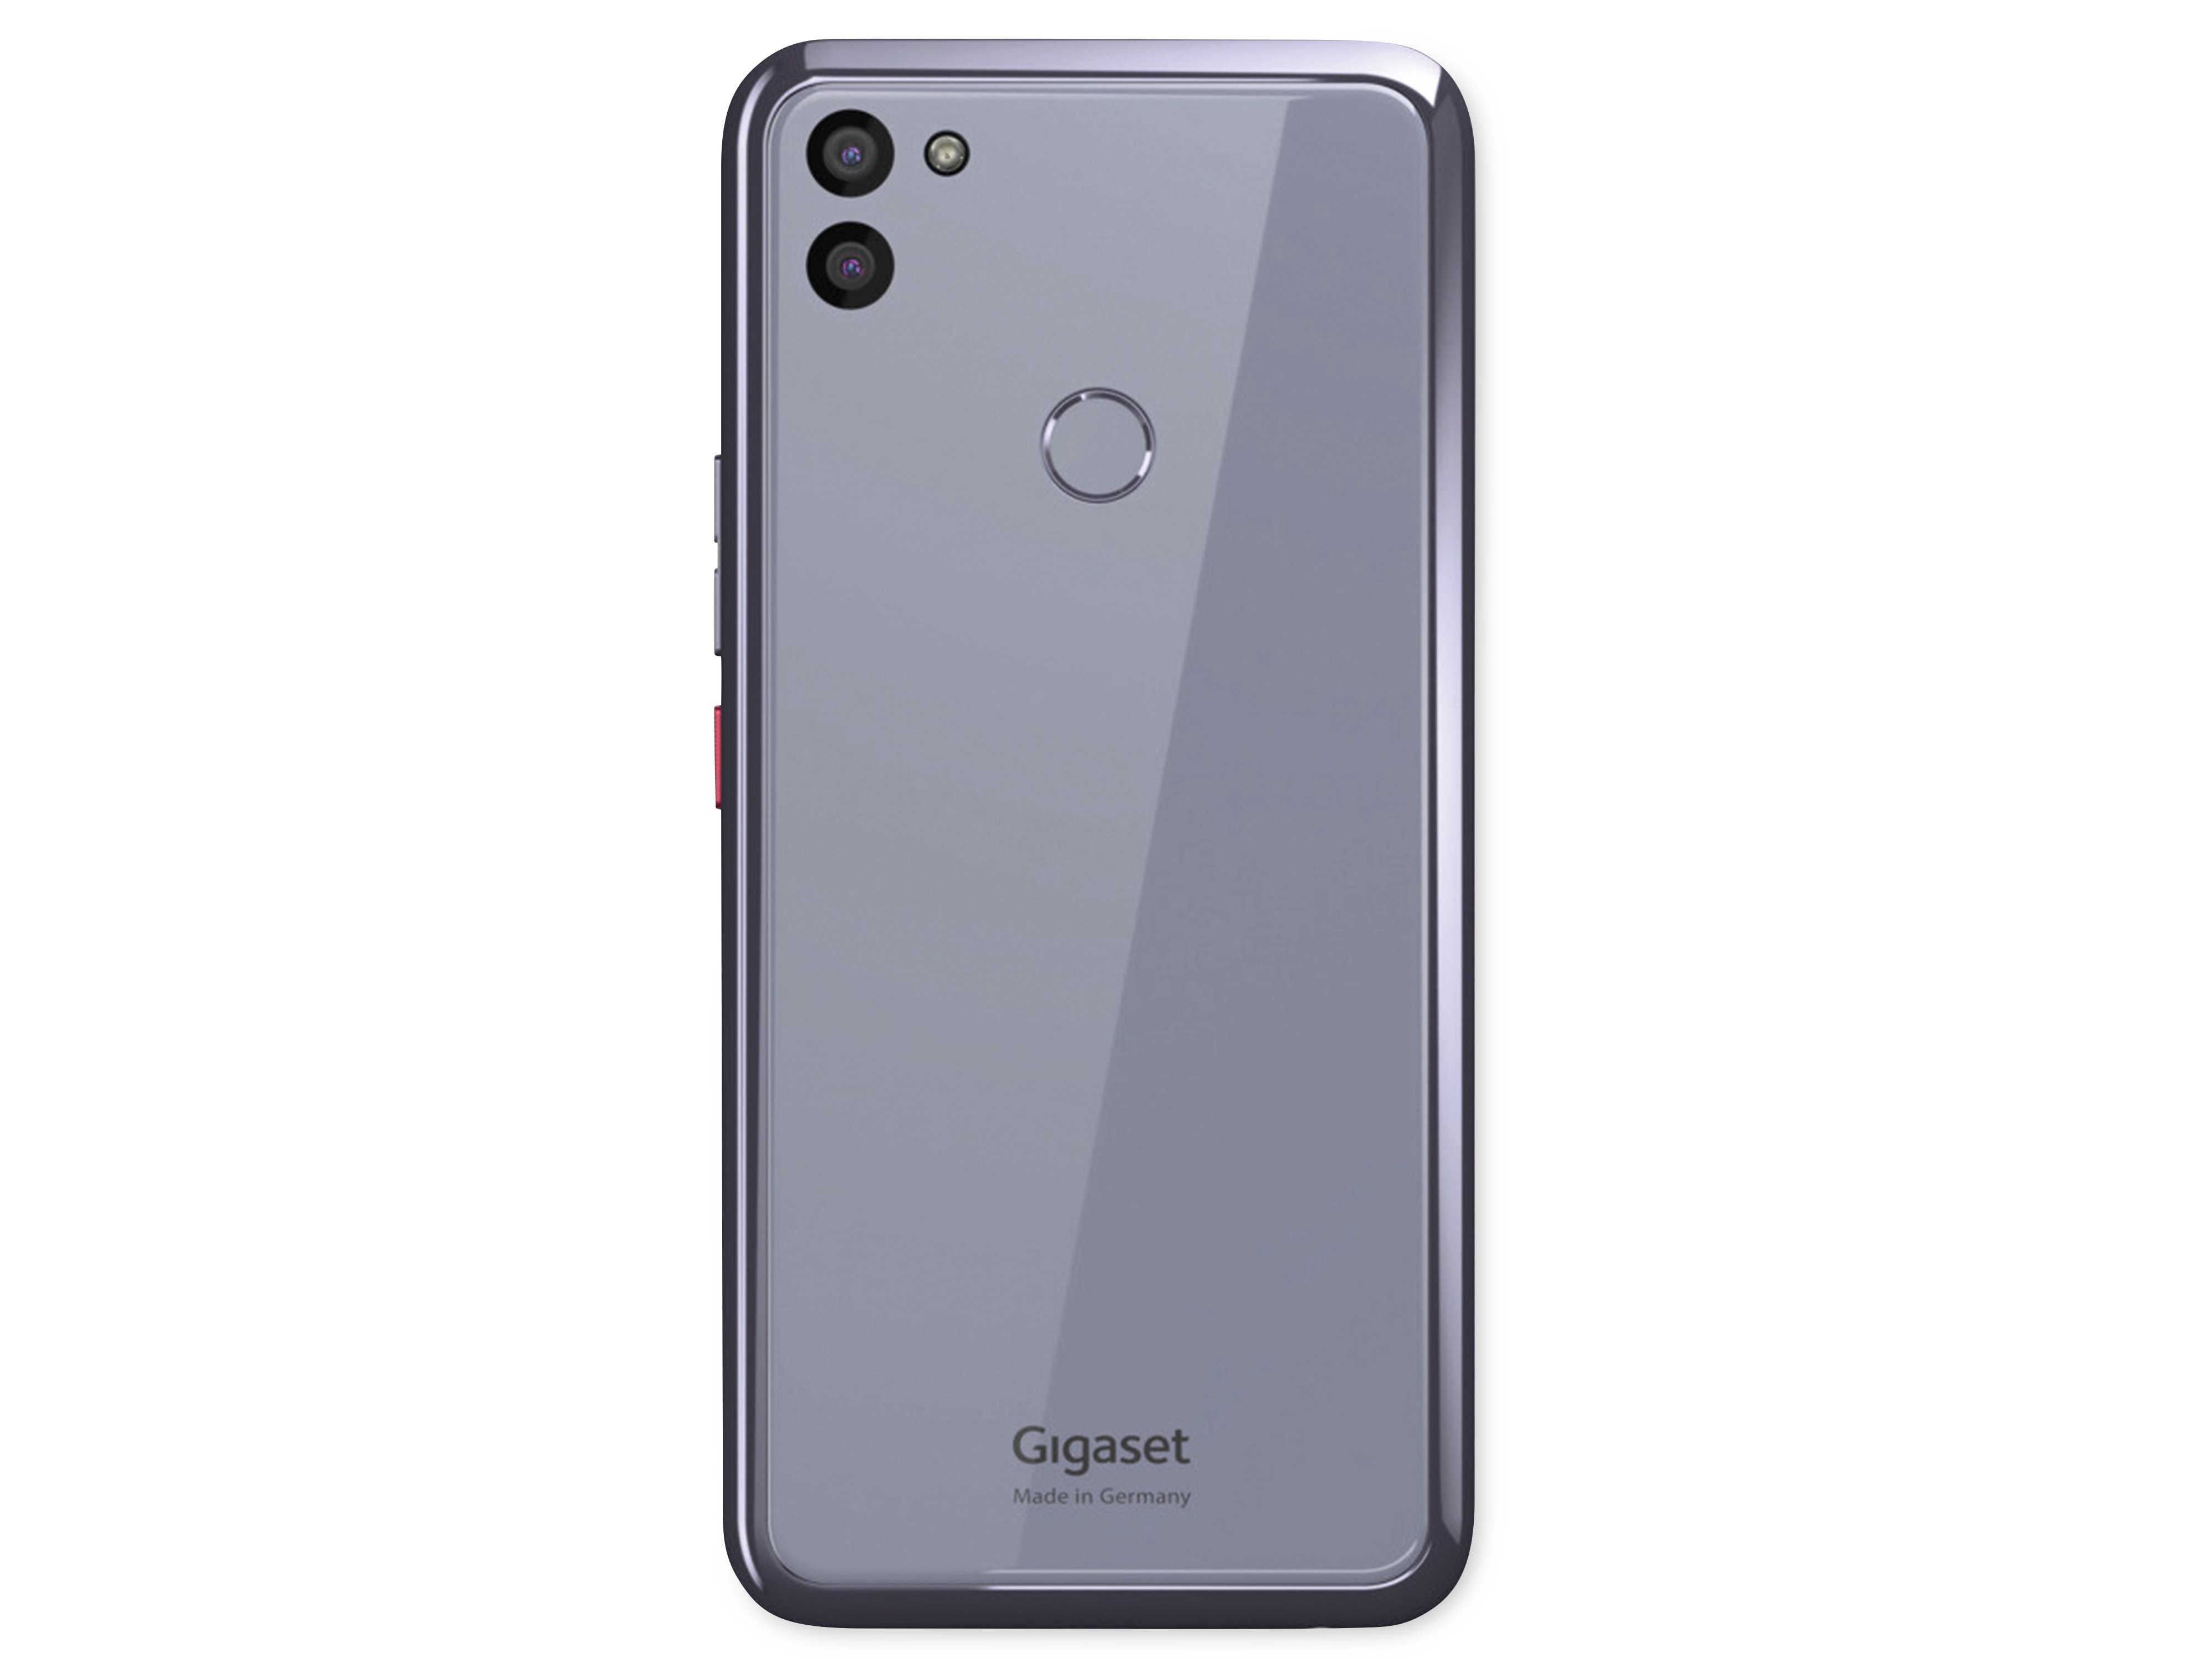 GIGASET Smartphone GS5 senior, dark titanium grey